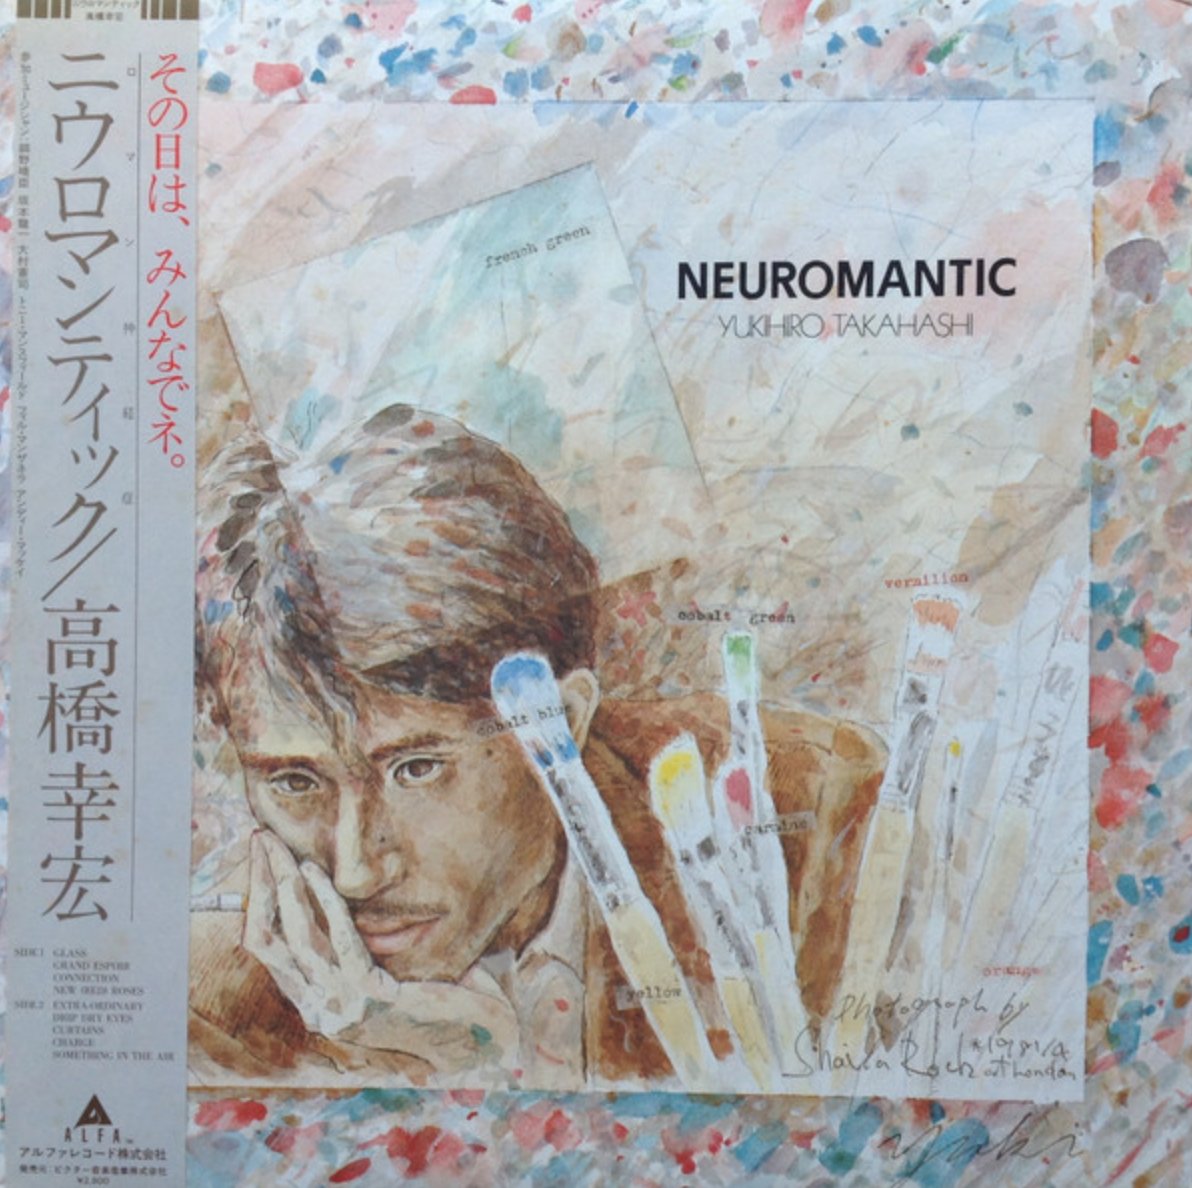 Yukihiro Takahashi - Neuromantic (Japan Import) - Inner Ocean Records